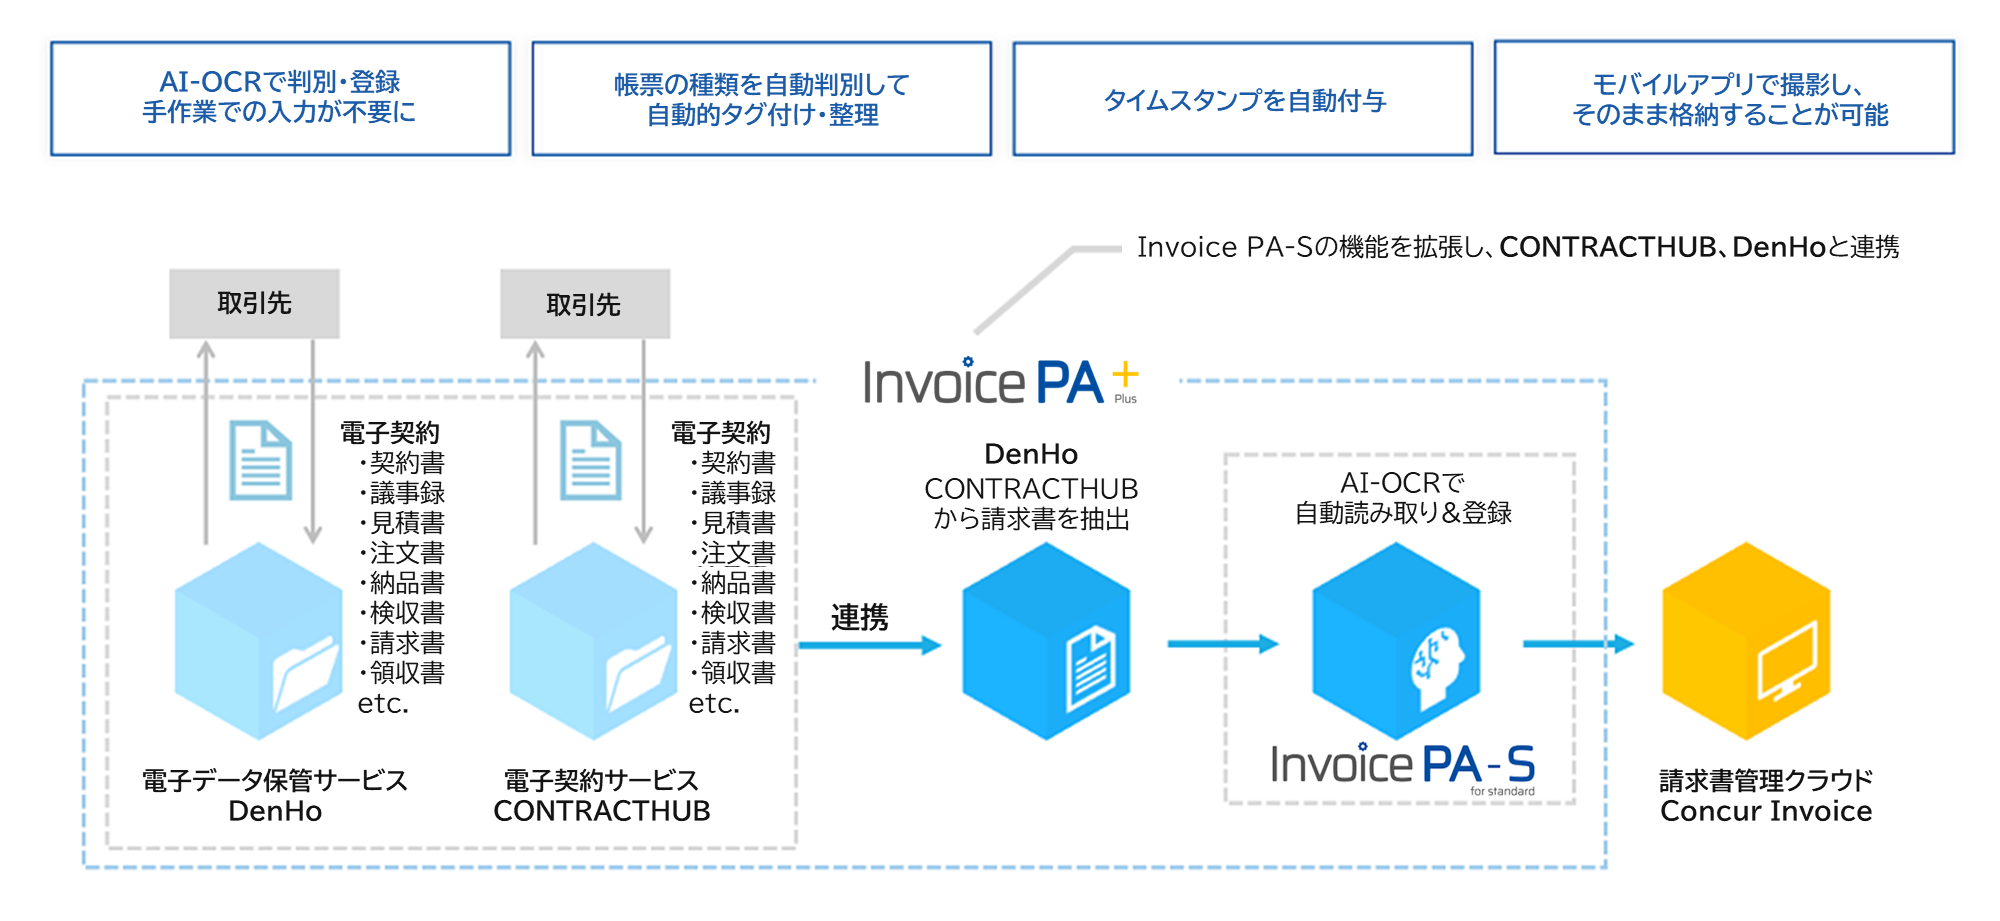 Invoice PA+